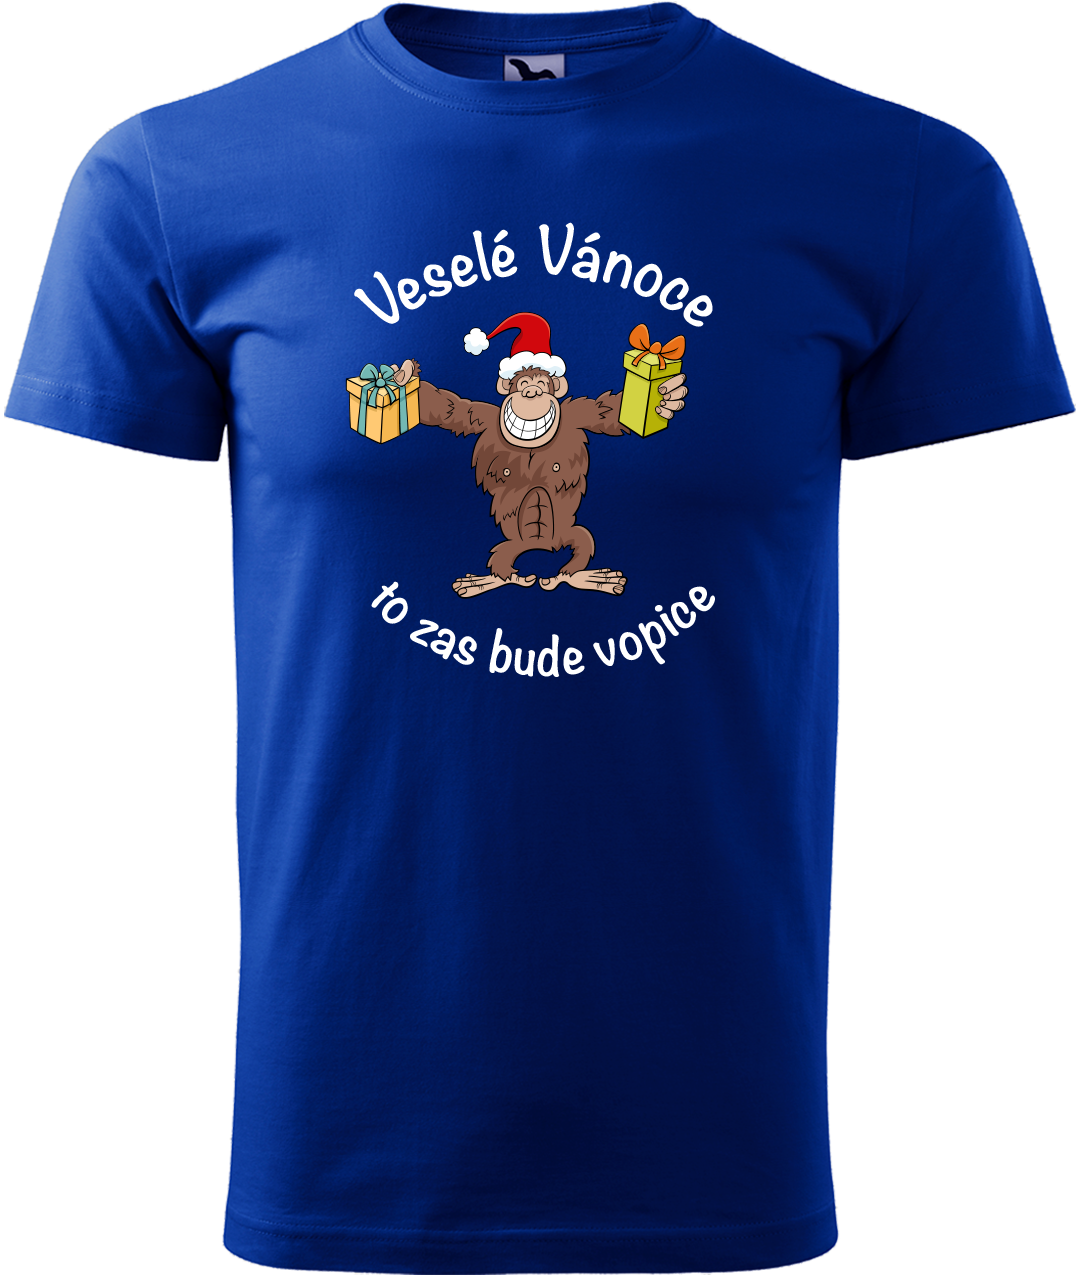 Pánské vánoční tričko - Veselé Vánoce to zas bude vopice (hnědý opičák) Velikost: S, Barva: Královská modrá (05)